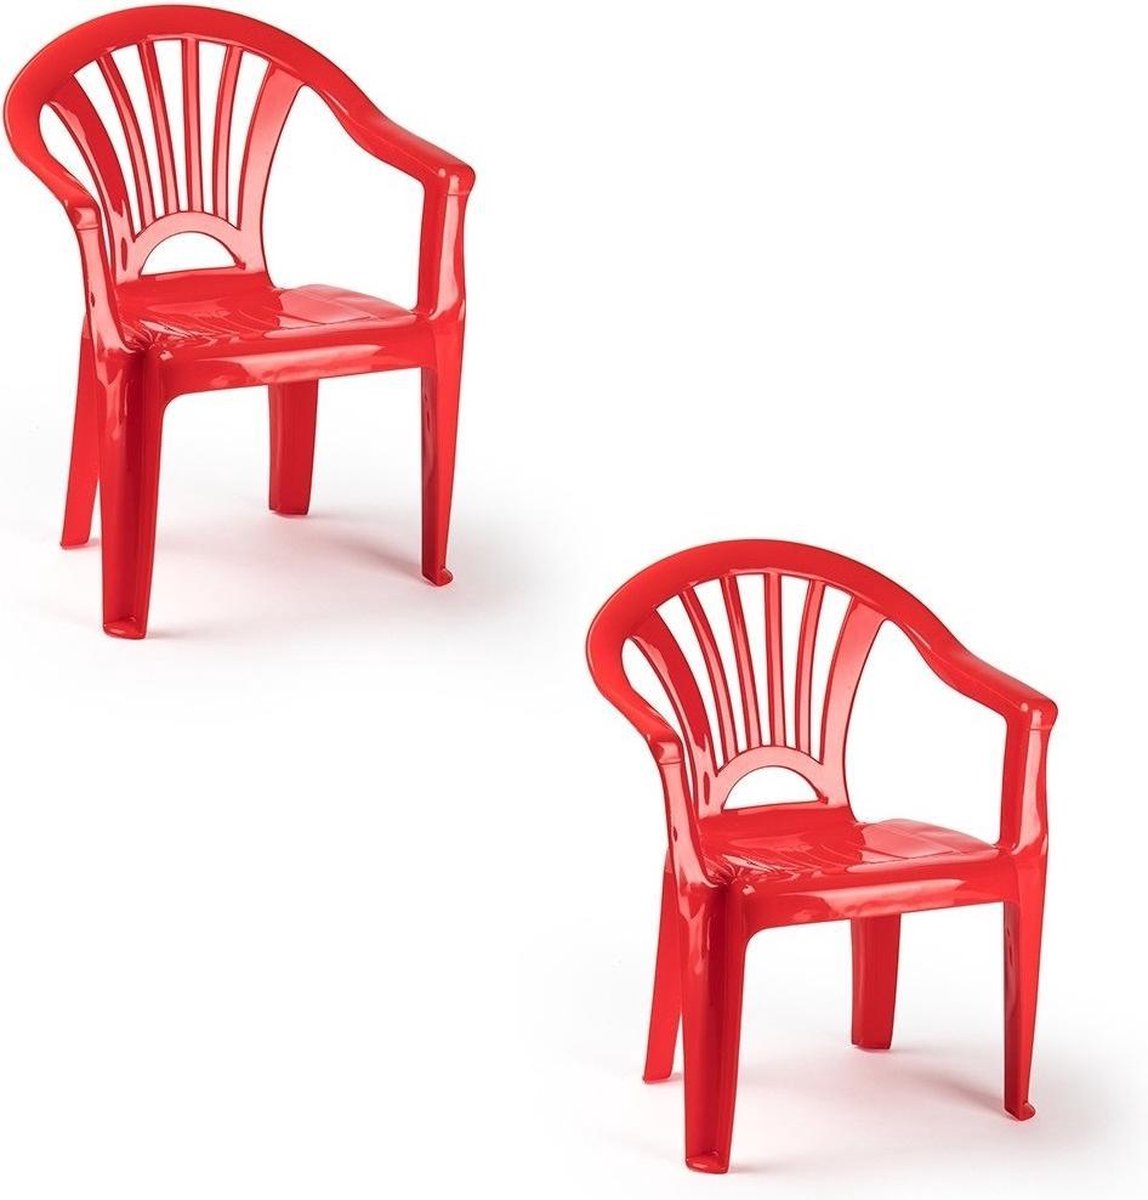 2x Rode stoeltjes voor kinderen 50 cm - Tuinmeubelen - Kunststof binnen/buitenstoelen voor kinderen